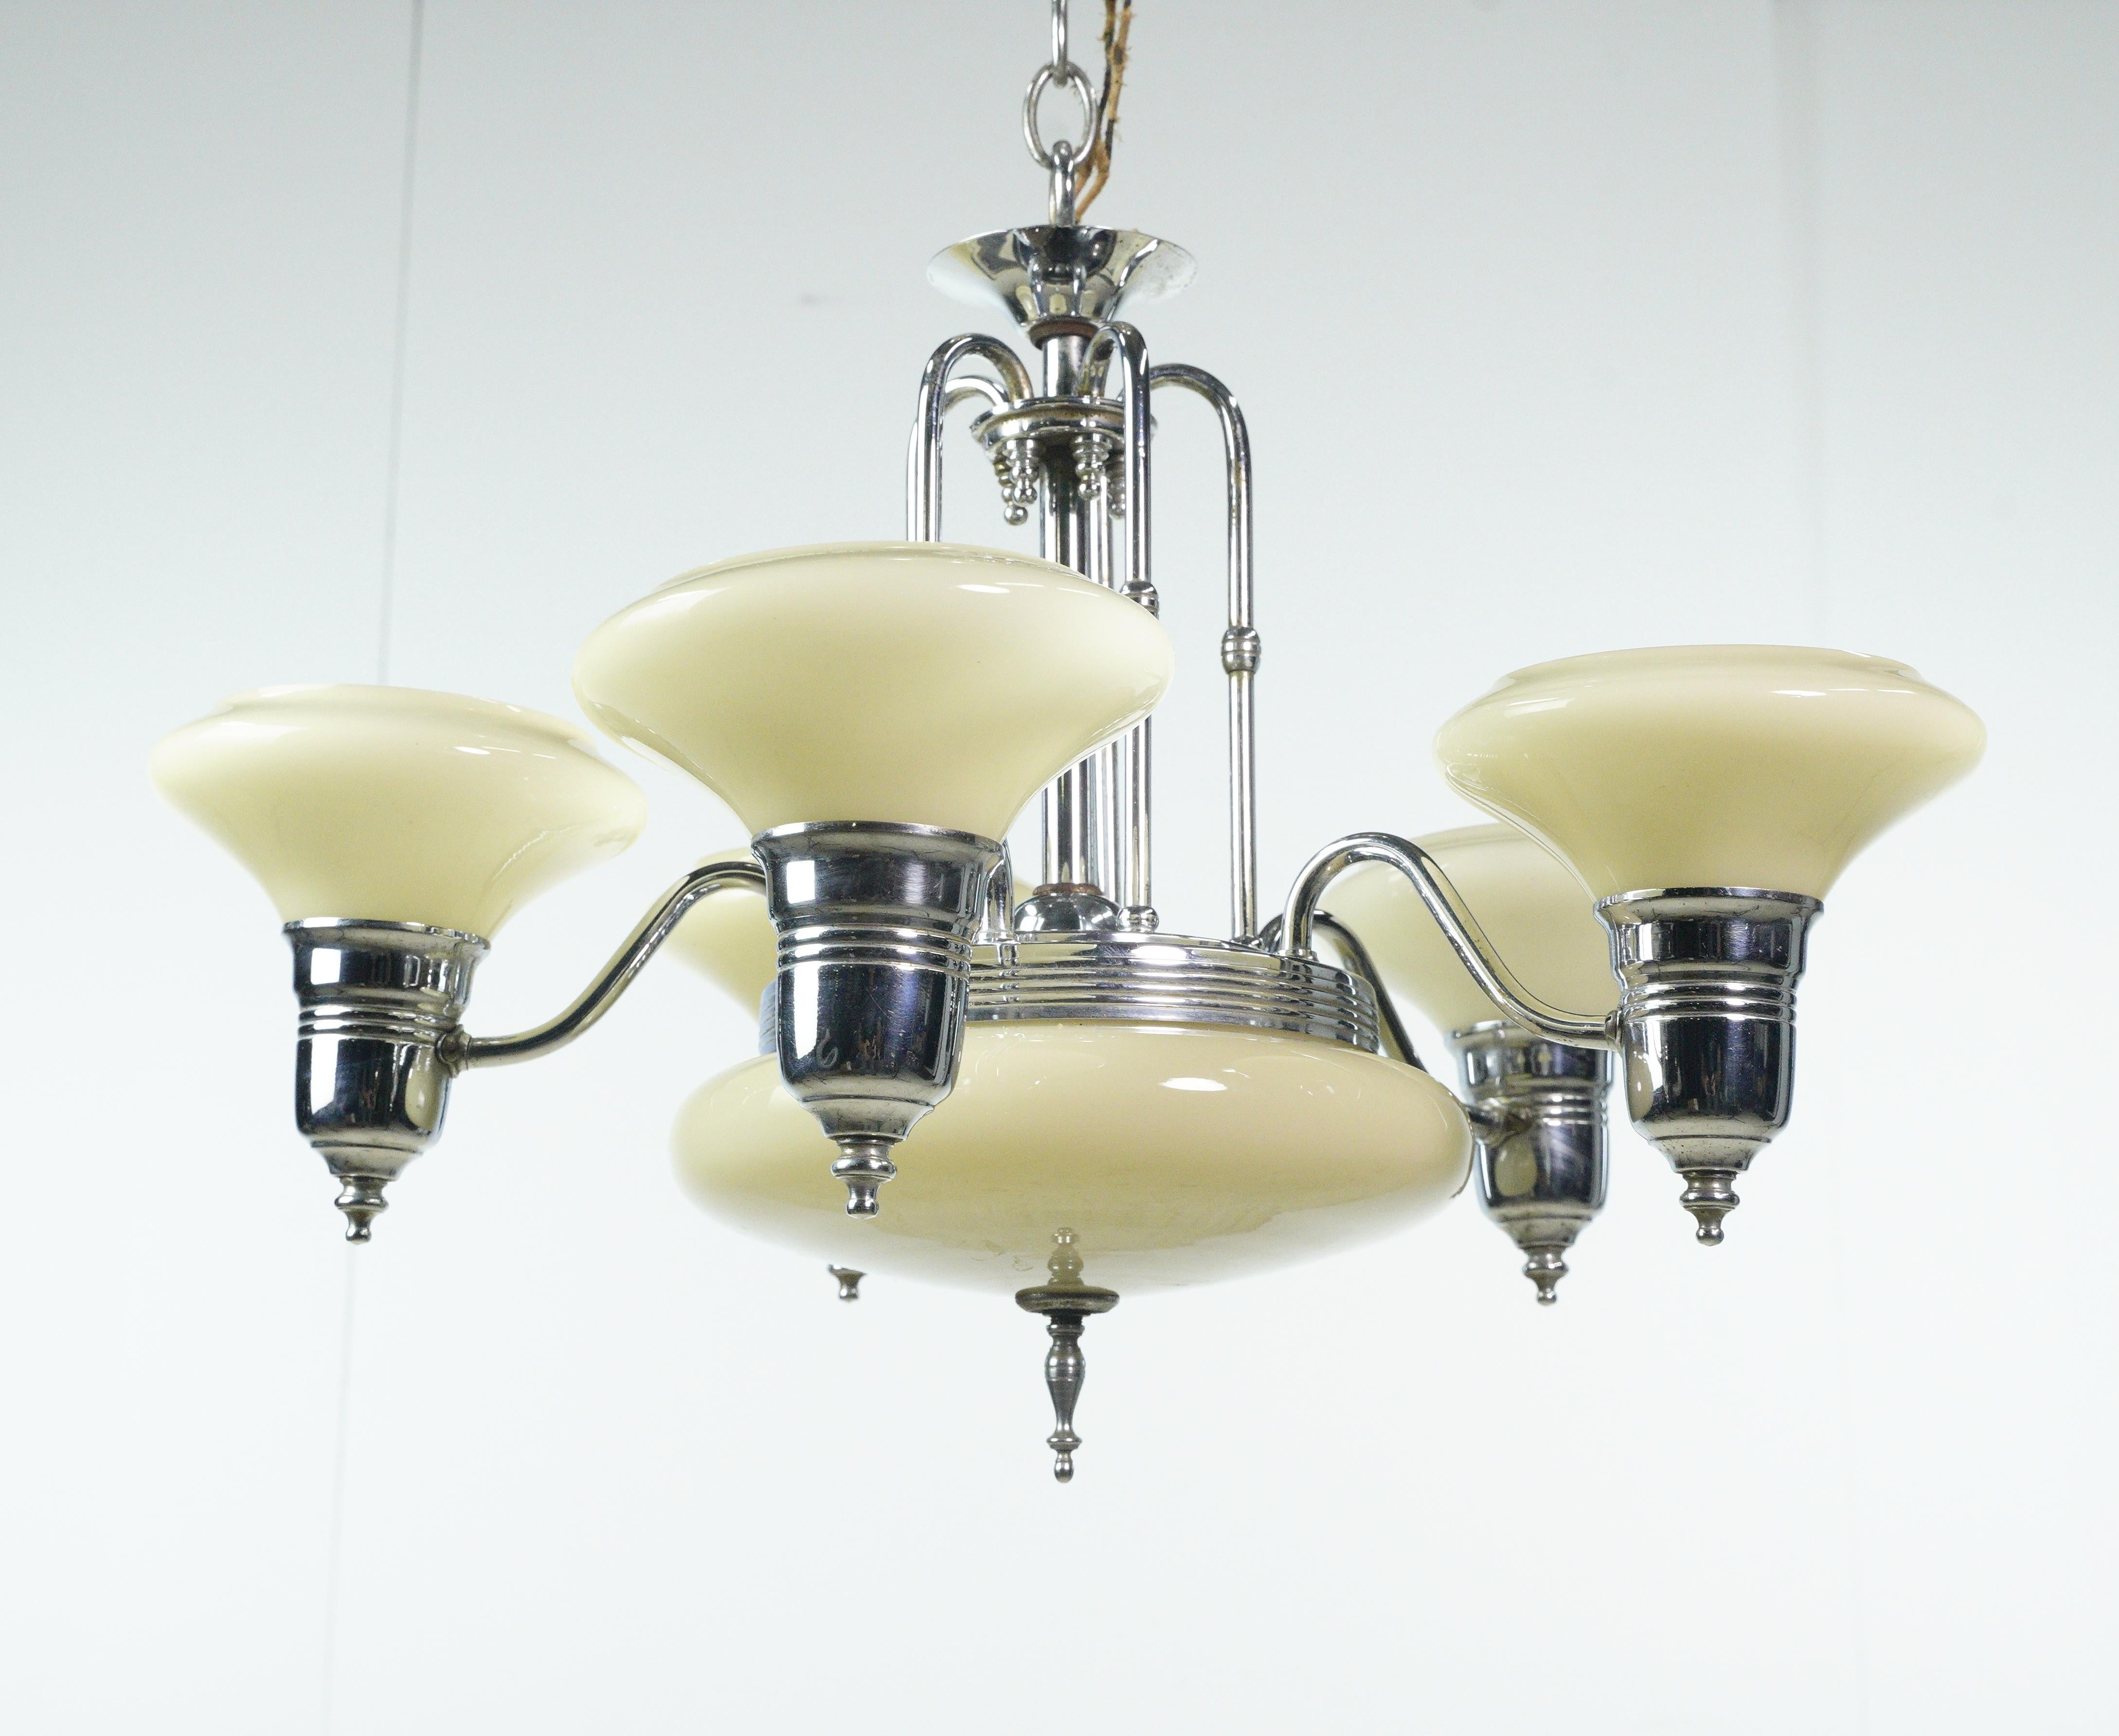 Ce lustre Art déco des années 1950 est un appareil d'éclairage élégant doté d'un abat-jour en verre blanc cassé, d'un abat-jour à base en verre blanc cassé et d'une structure en acier à cinq bras. Il capture l'essence du design Art Deco, ajoutant